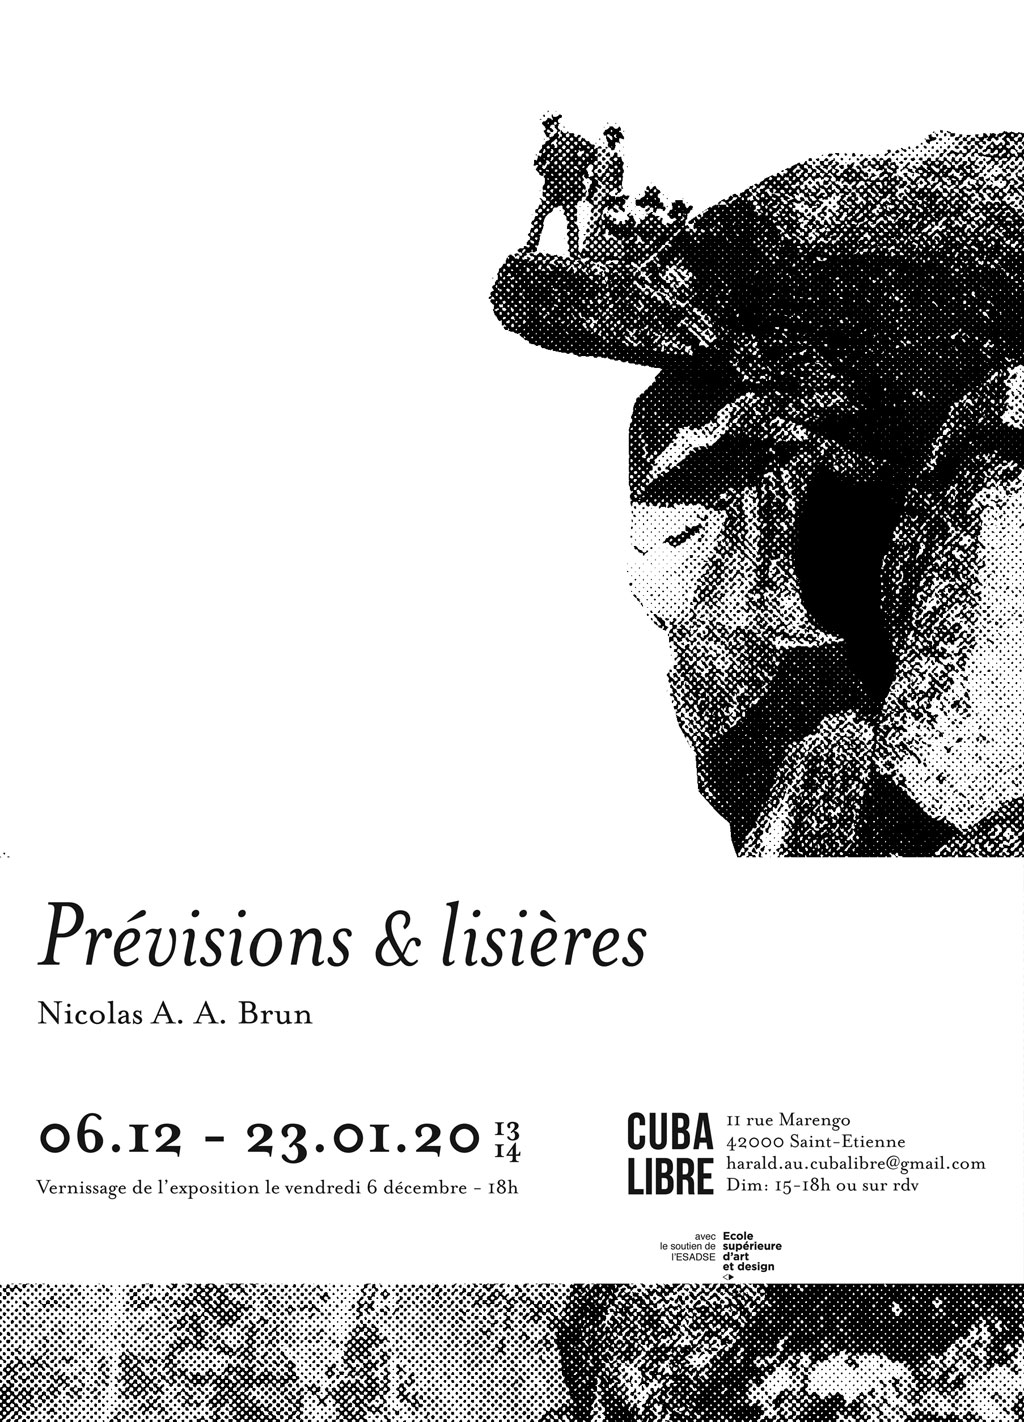 Exposition personnelle "Prévisions & Lisières" à la galerie Cuba Libre 